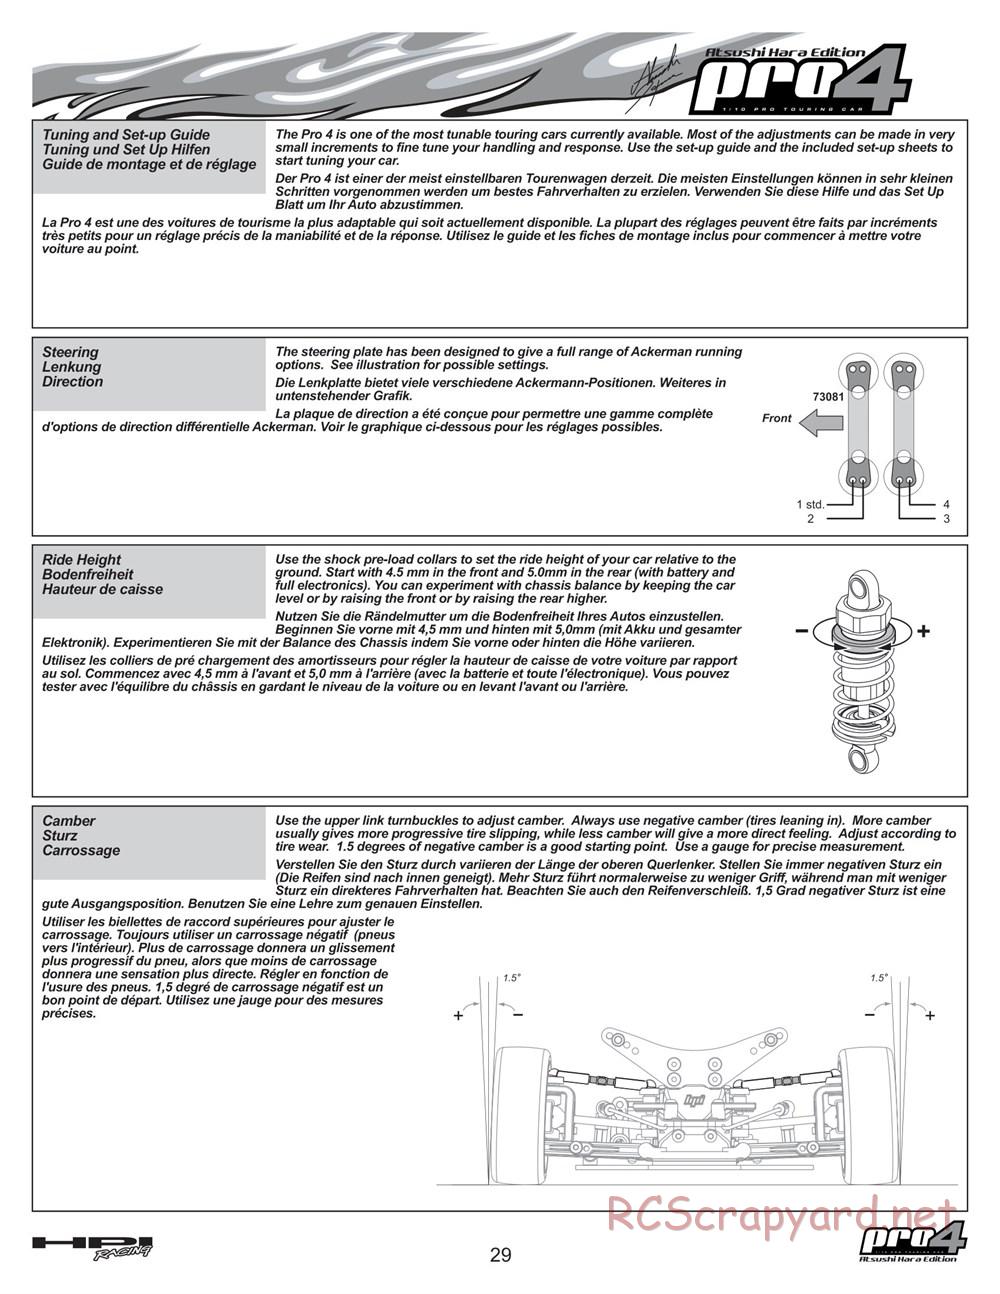 HPI - Pro4 Hara Edition - Manual - Page 29